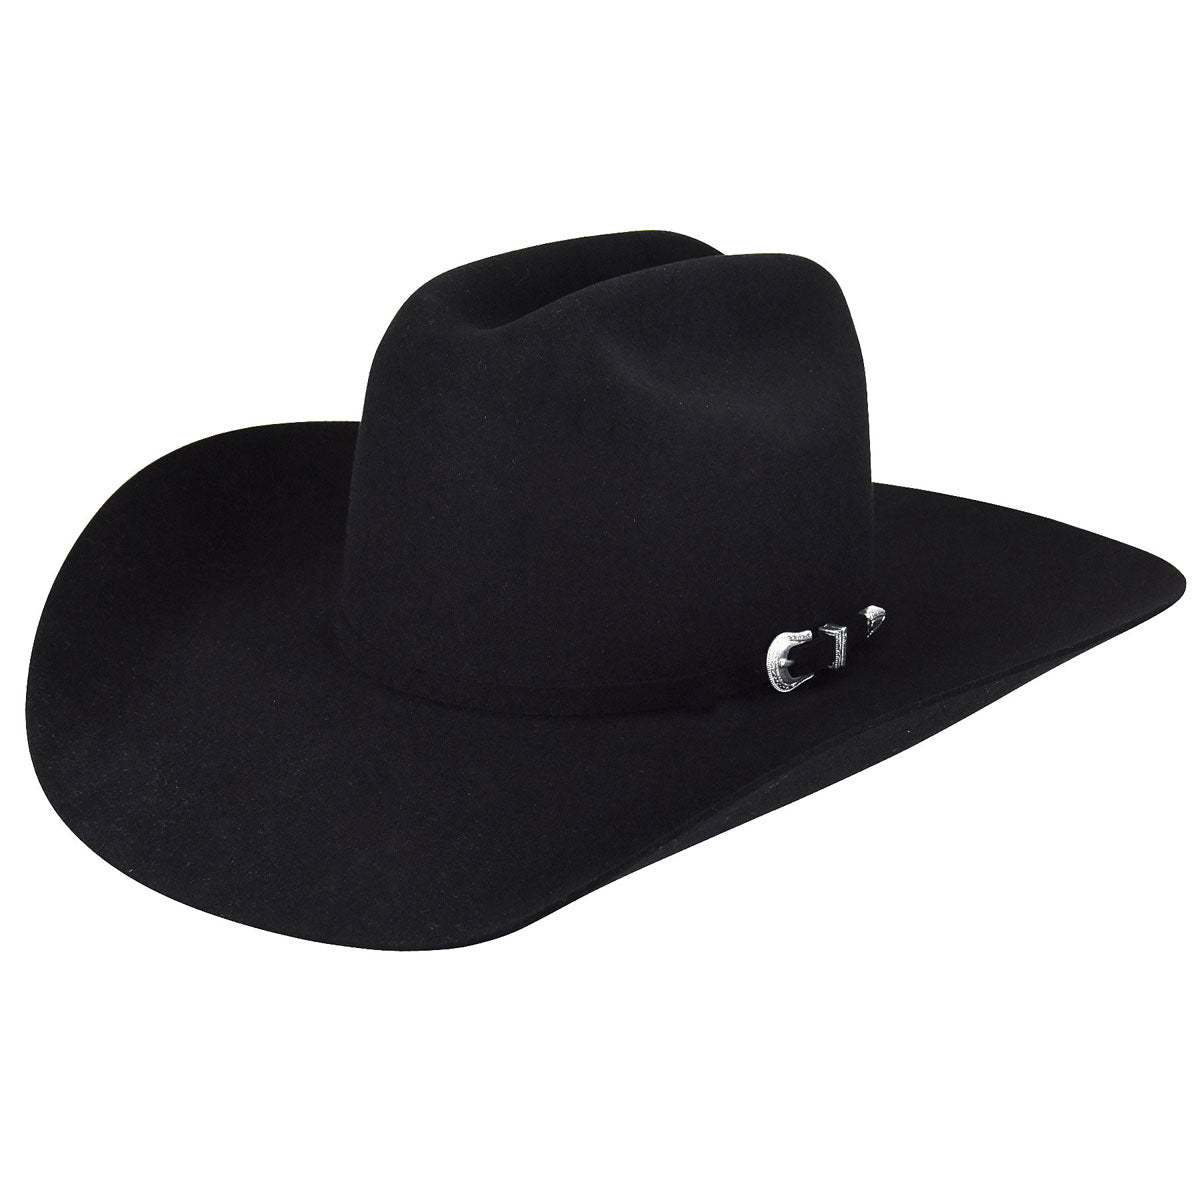 Bailey Courtright 7X Black Fur Felt Cowboy Hat W1507A – wildbillswestern